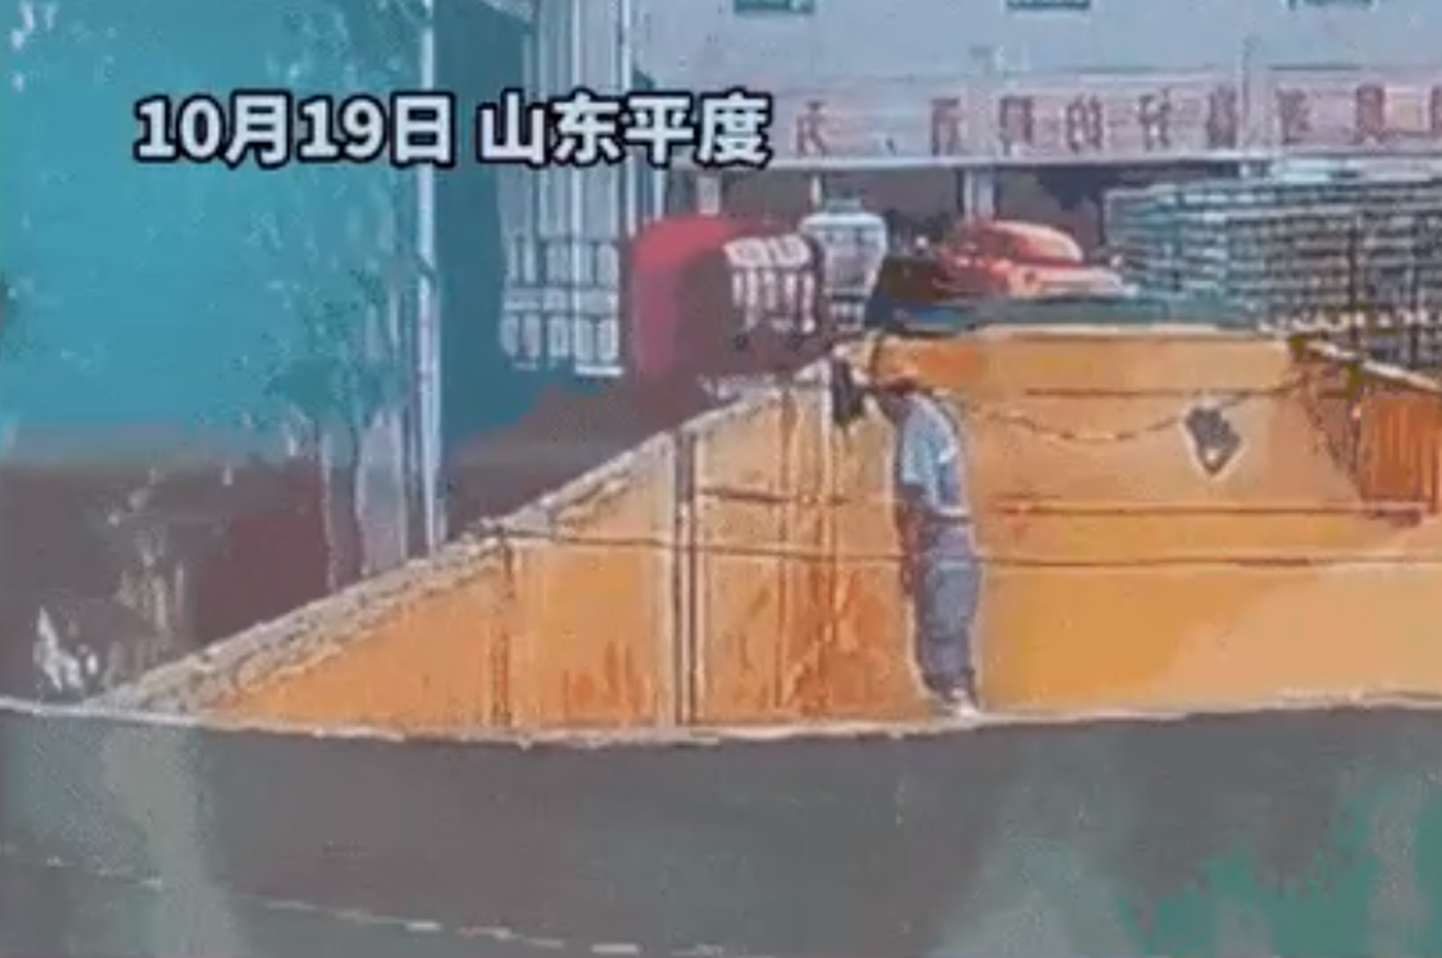 На видео попало, как сотрудник китайской пивоварни мочится в контейнер с ингредиентами для пива